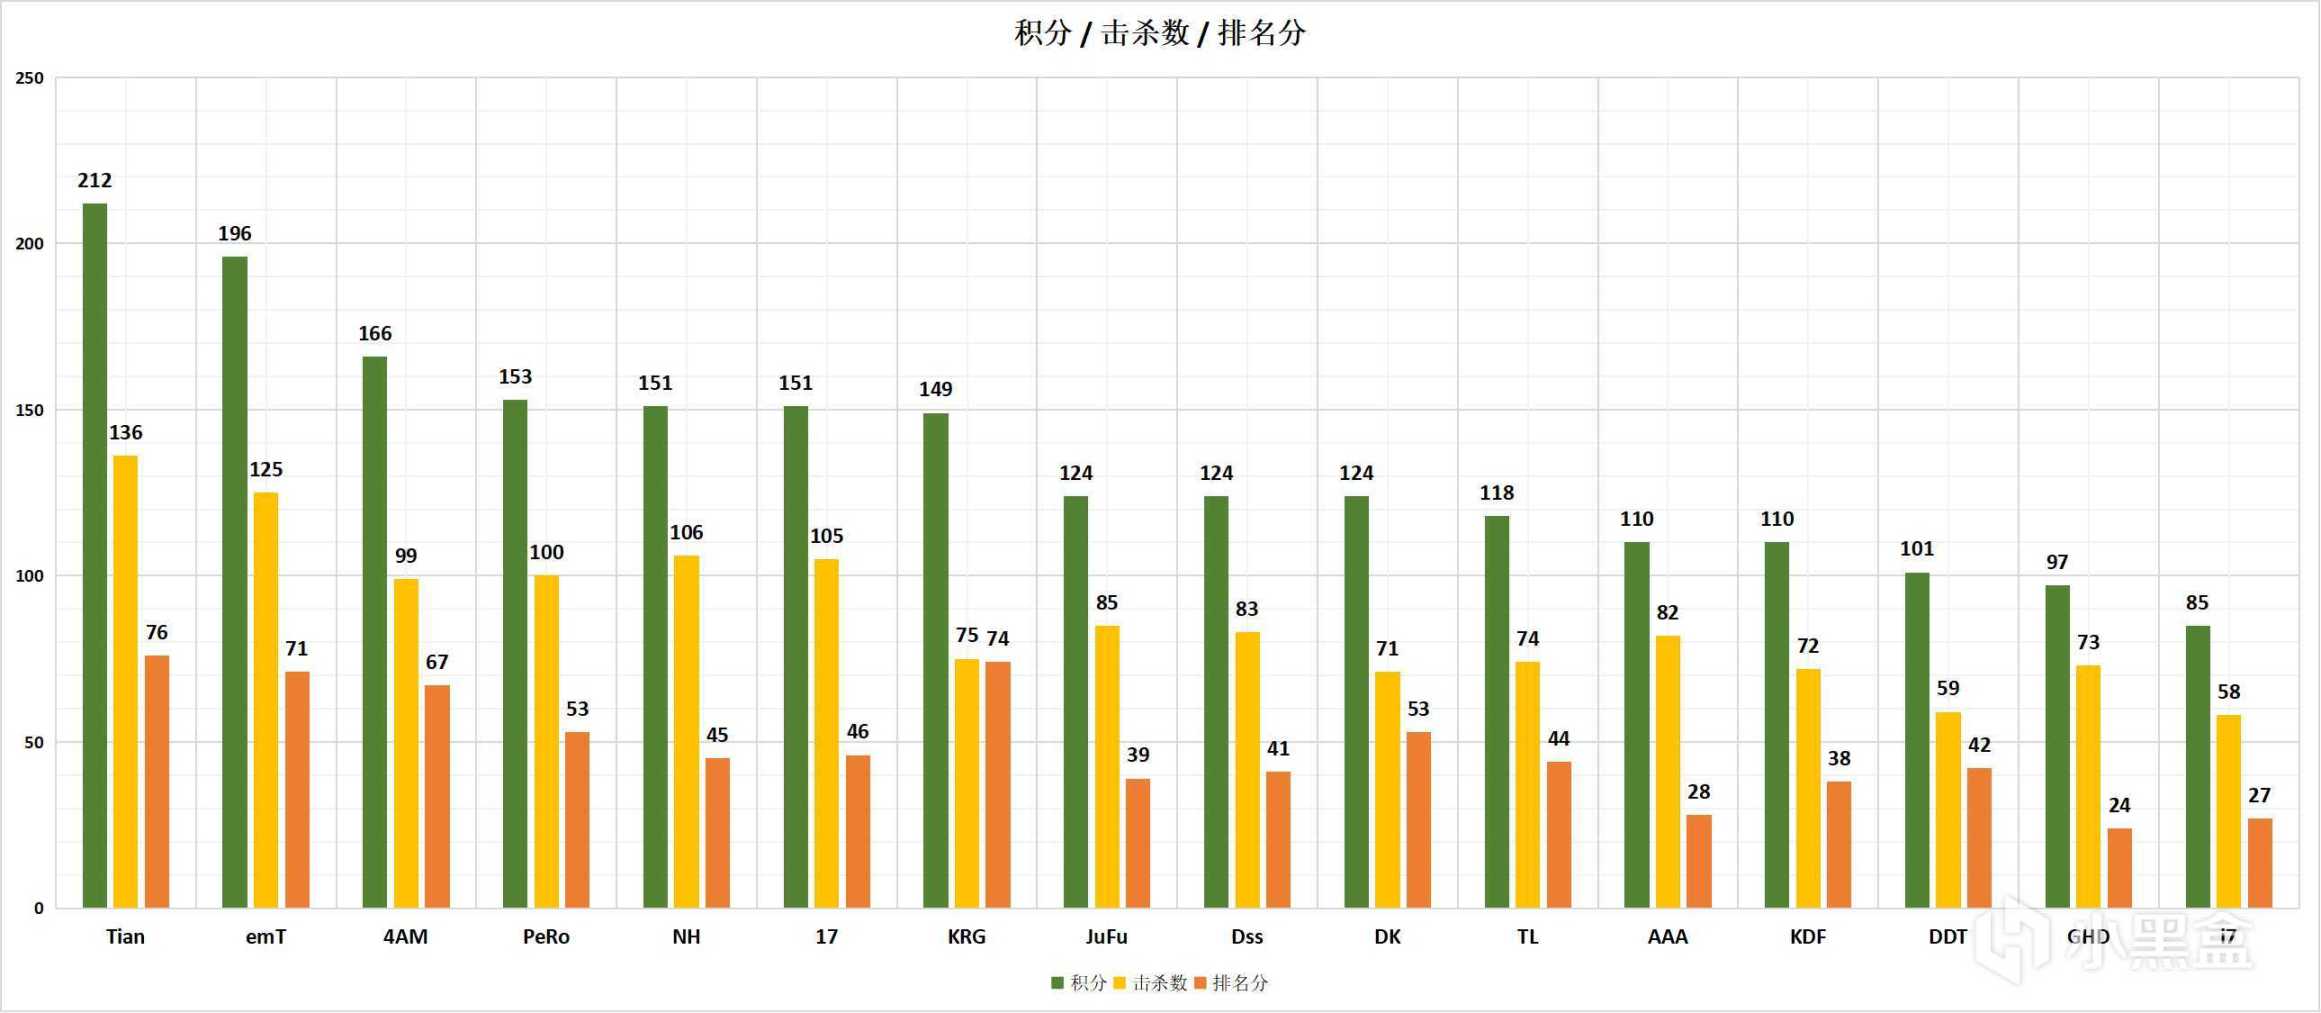 【数据流】BPC决赛数据，Tianba全程领跑夺冠！-第6张